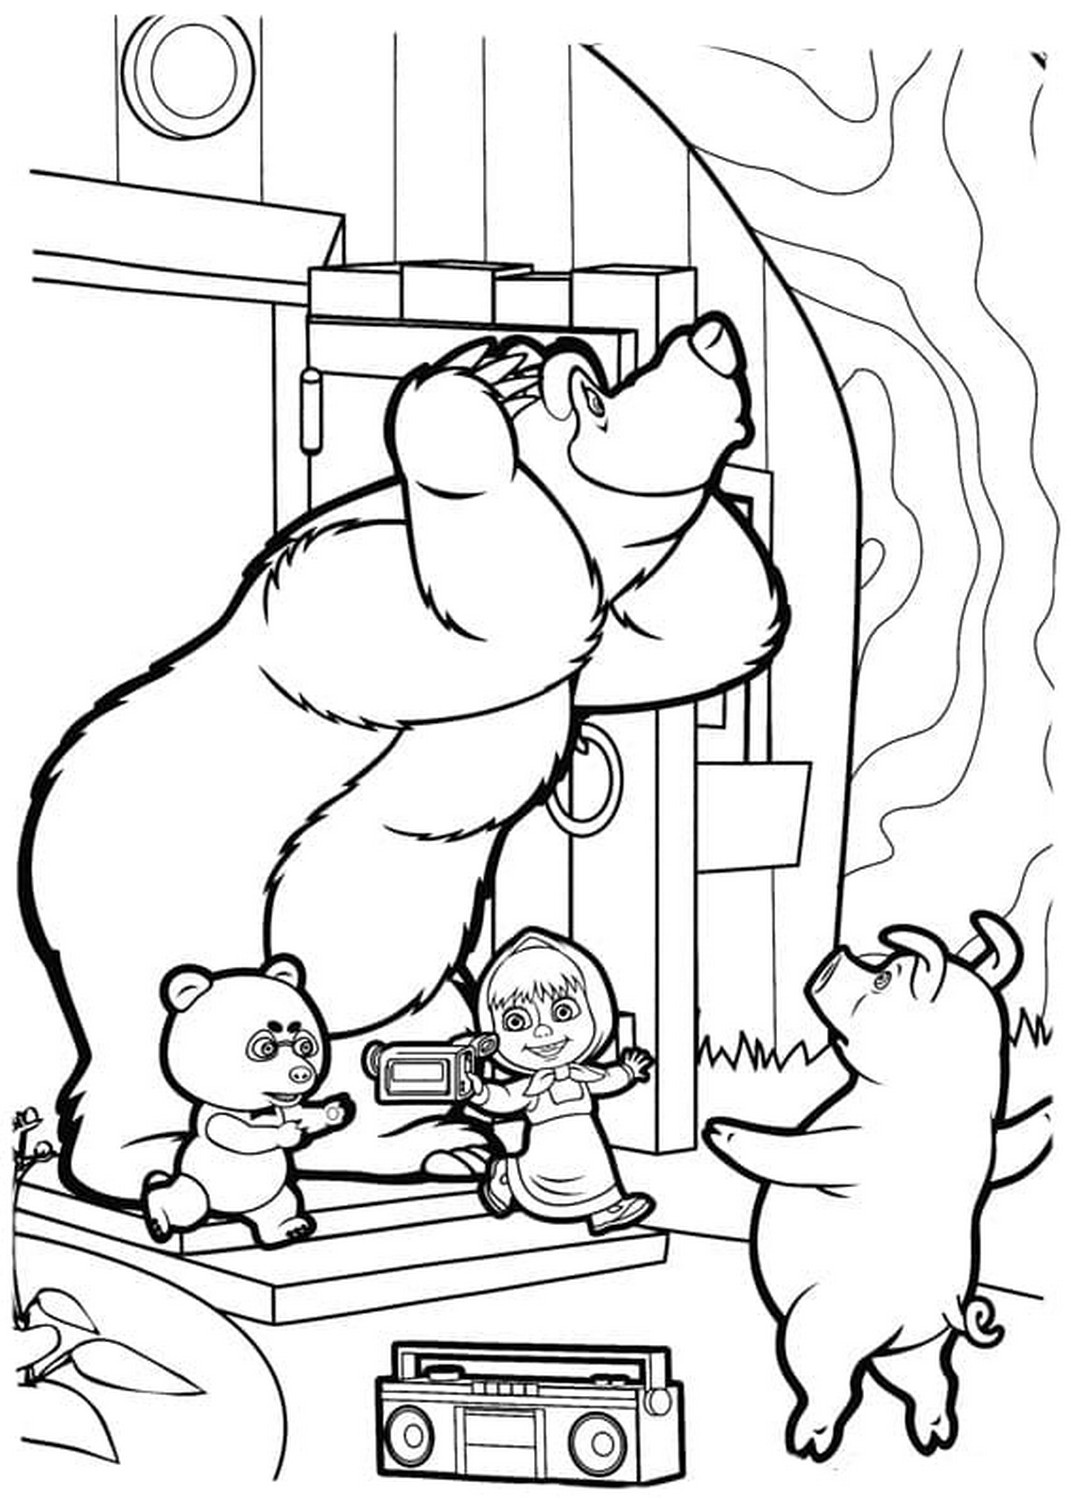 Dibujo 34 de Masha y el oso para imprimir y colorear